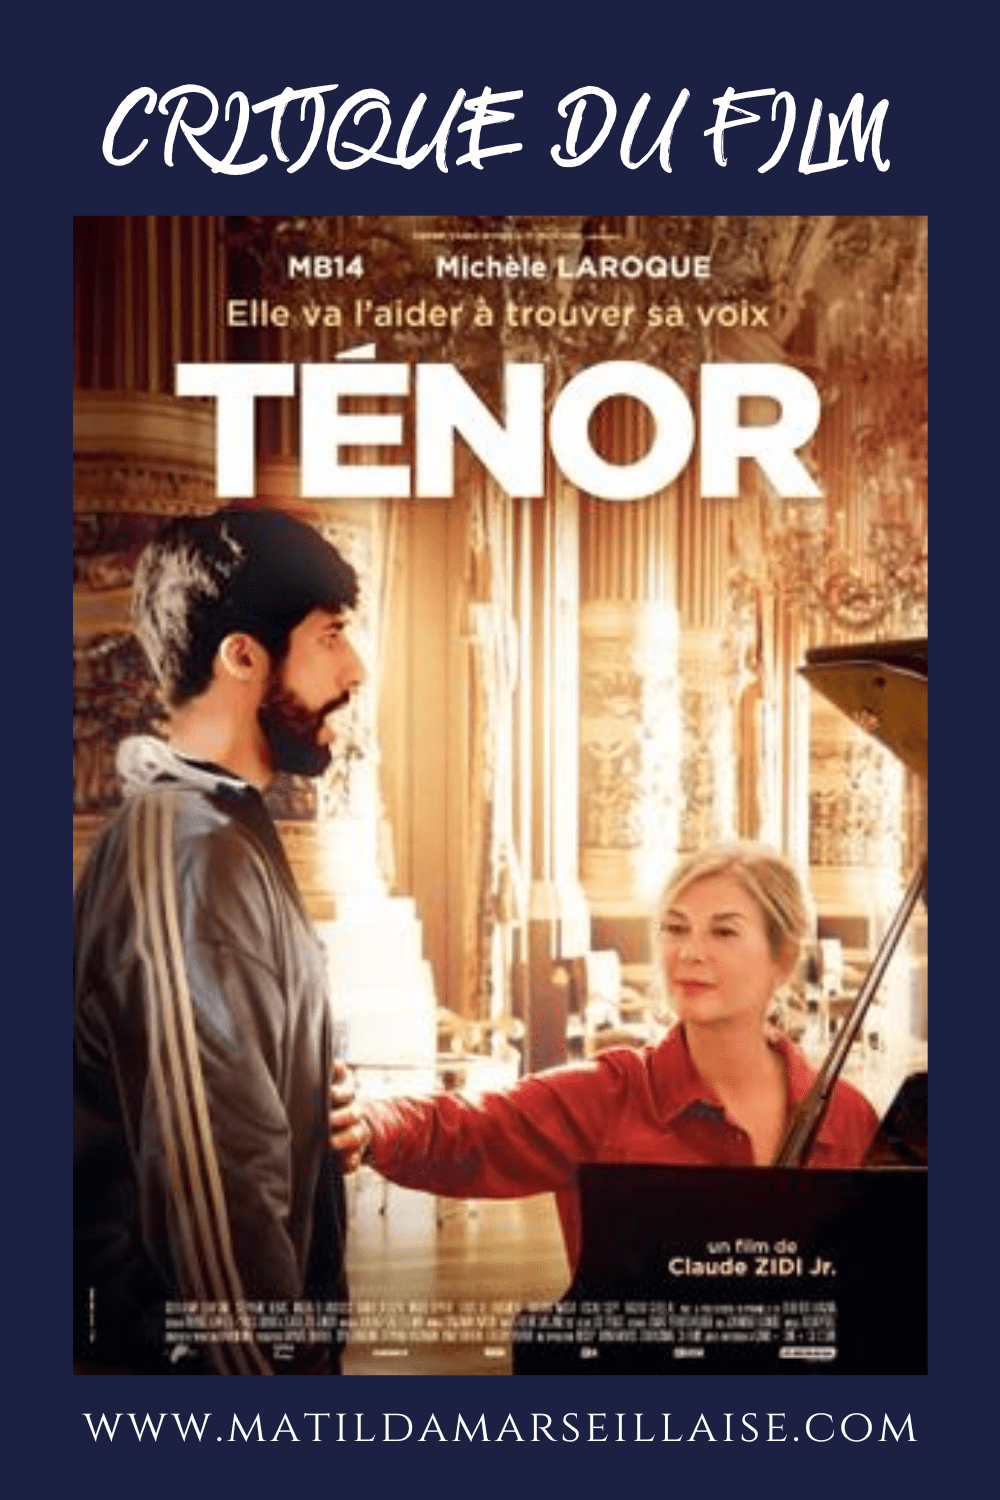 Ténor le film croise le rap de la banlieue parisienne et l’opéra bourgeois